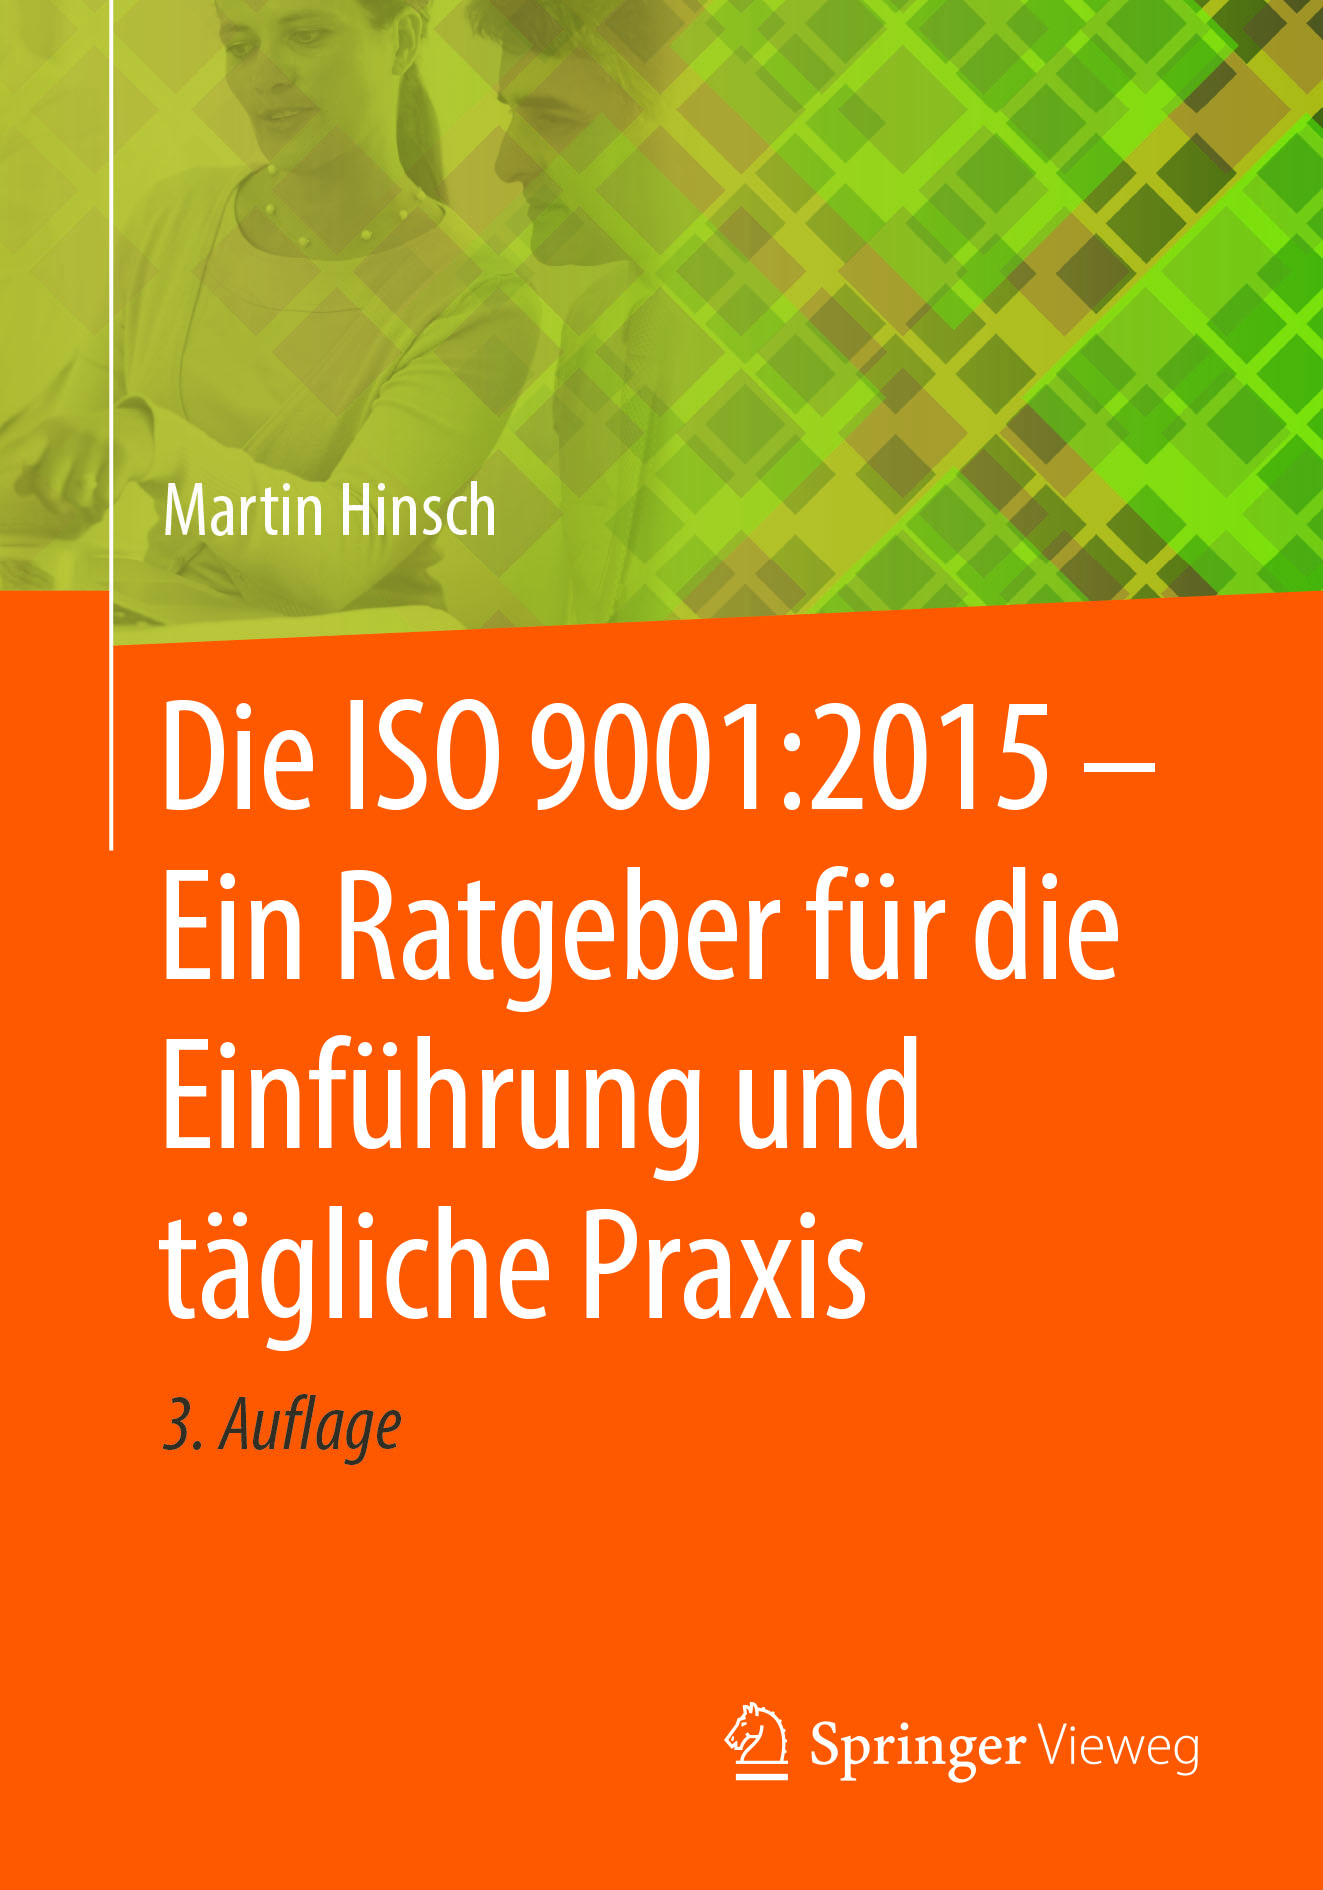 Die ISO 9001:2015 – Ein Ratgeber für die Einführung und tägliche Praxis by Martin Hinsch